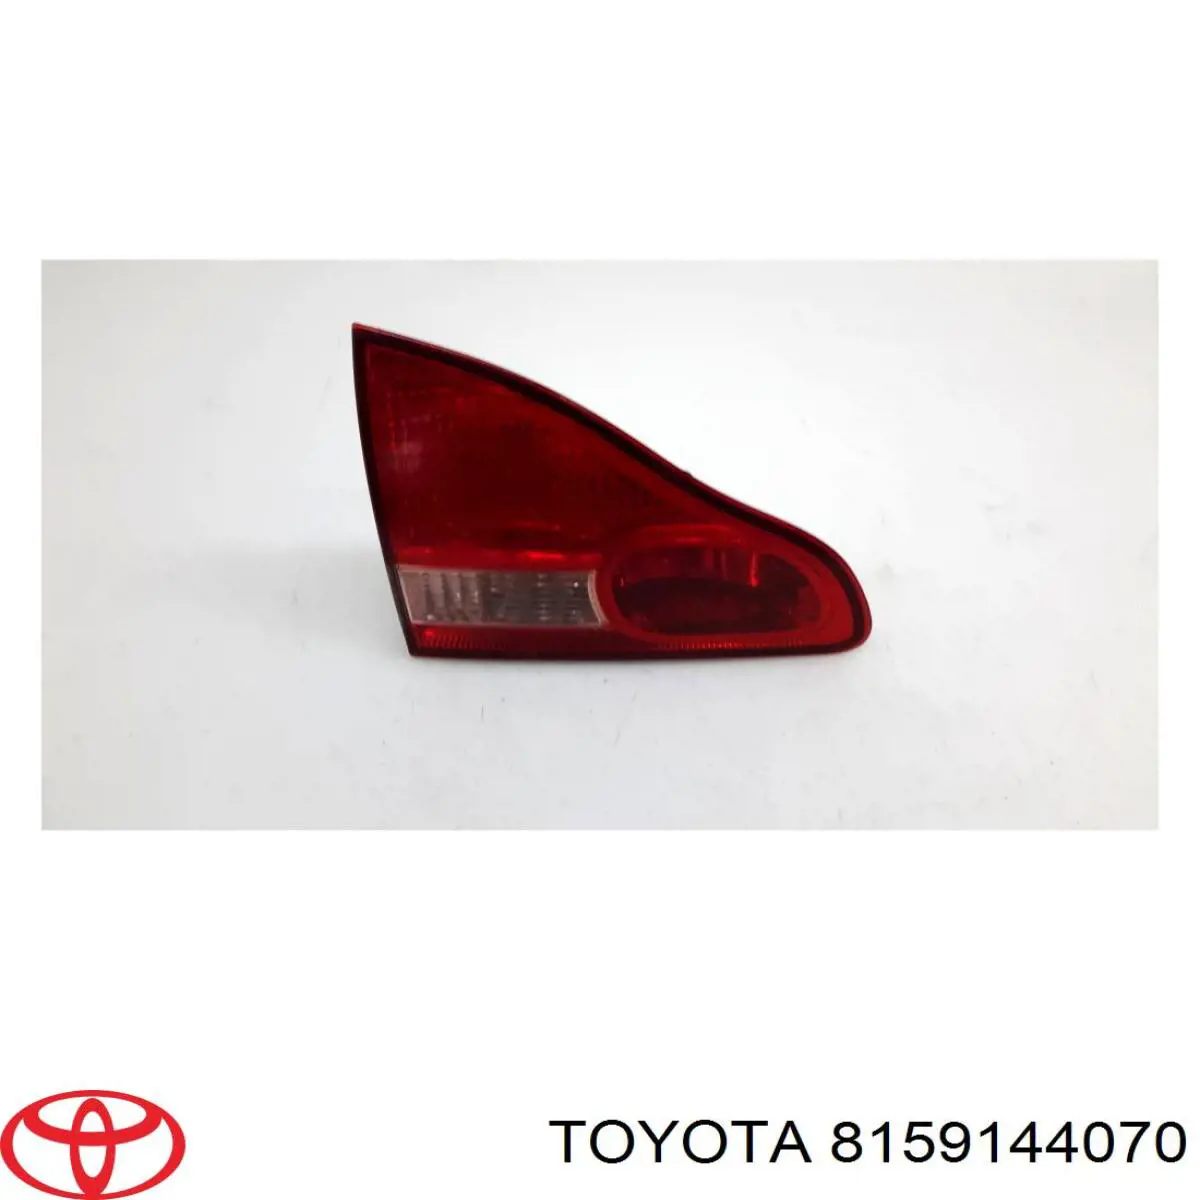 8159144070 Toyota lanterna traseira esquerda interna